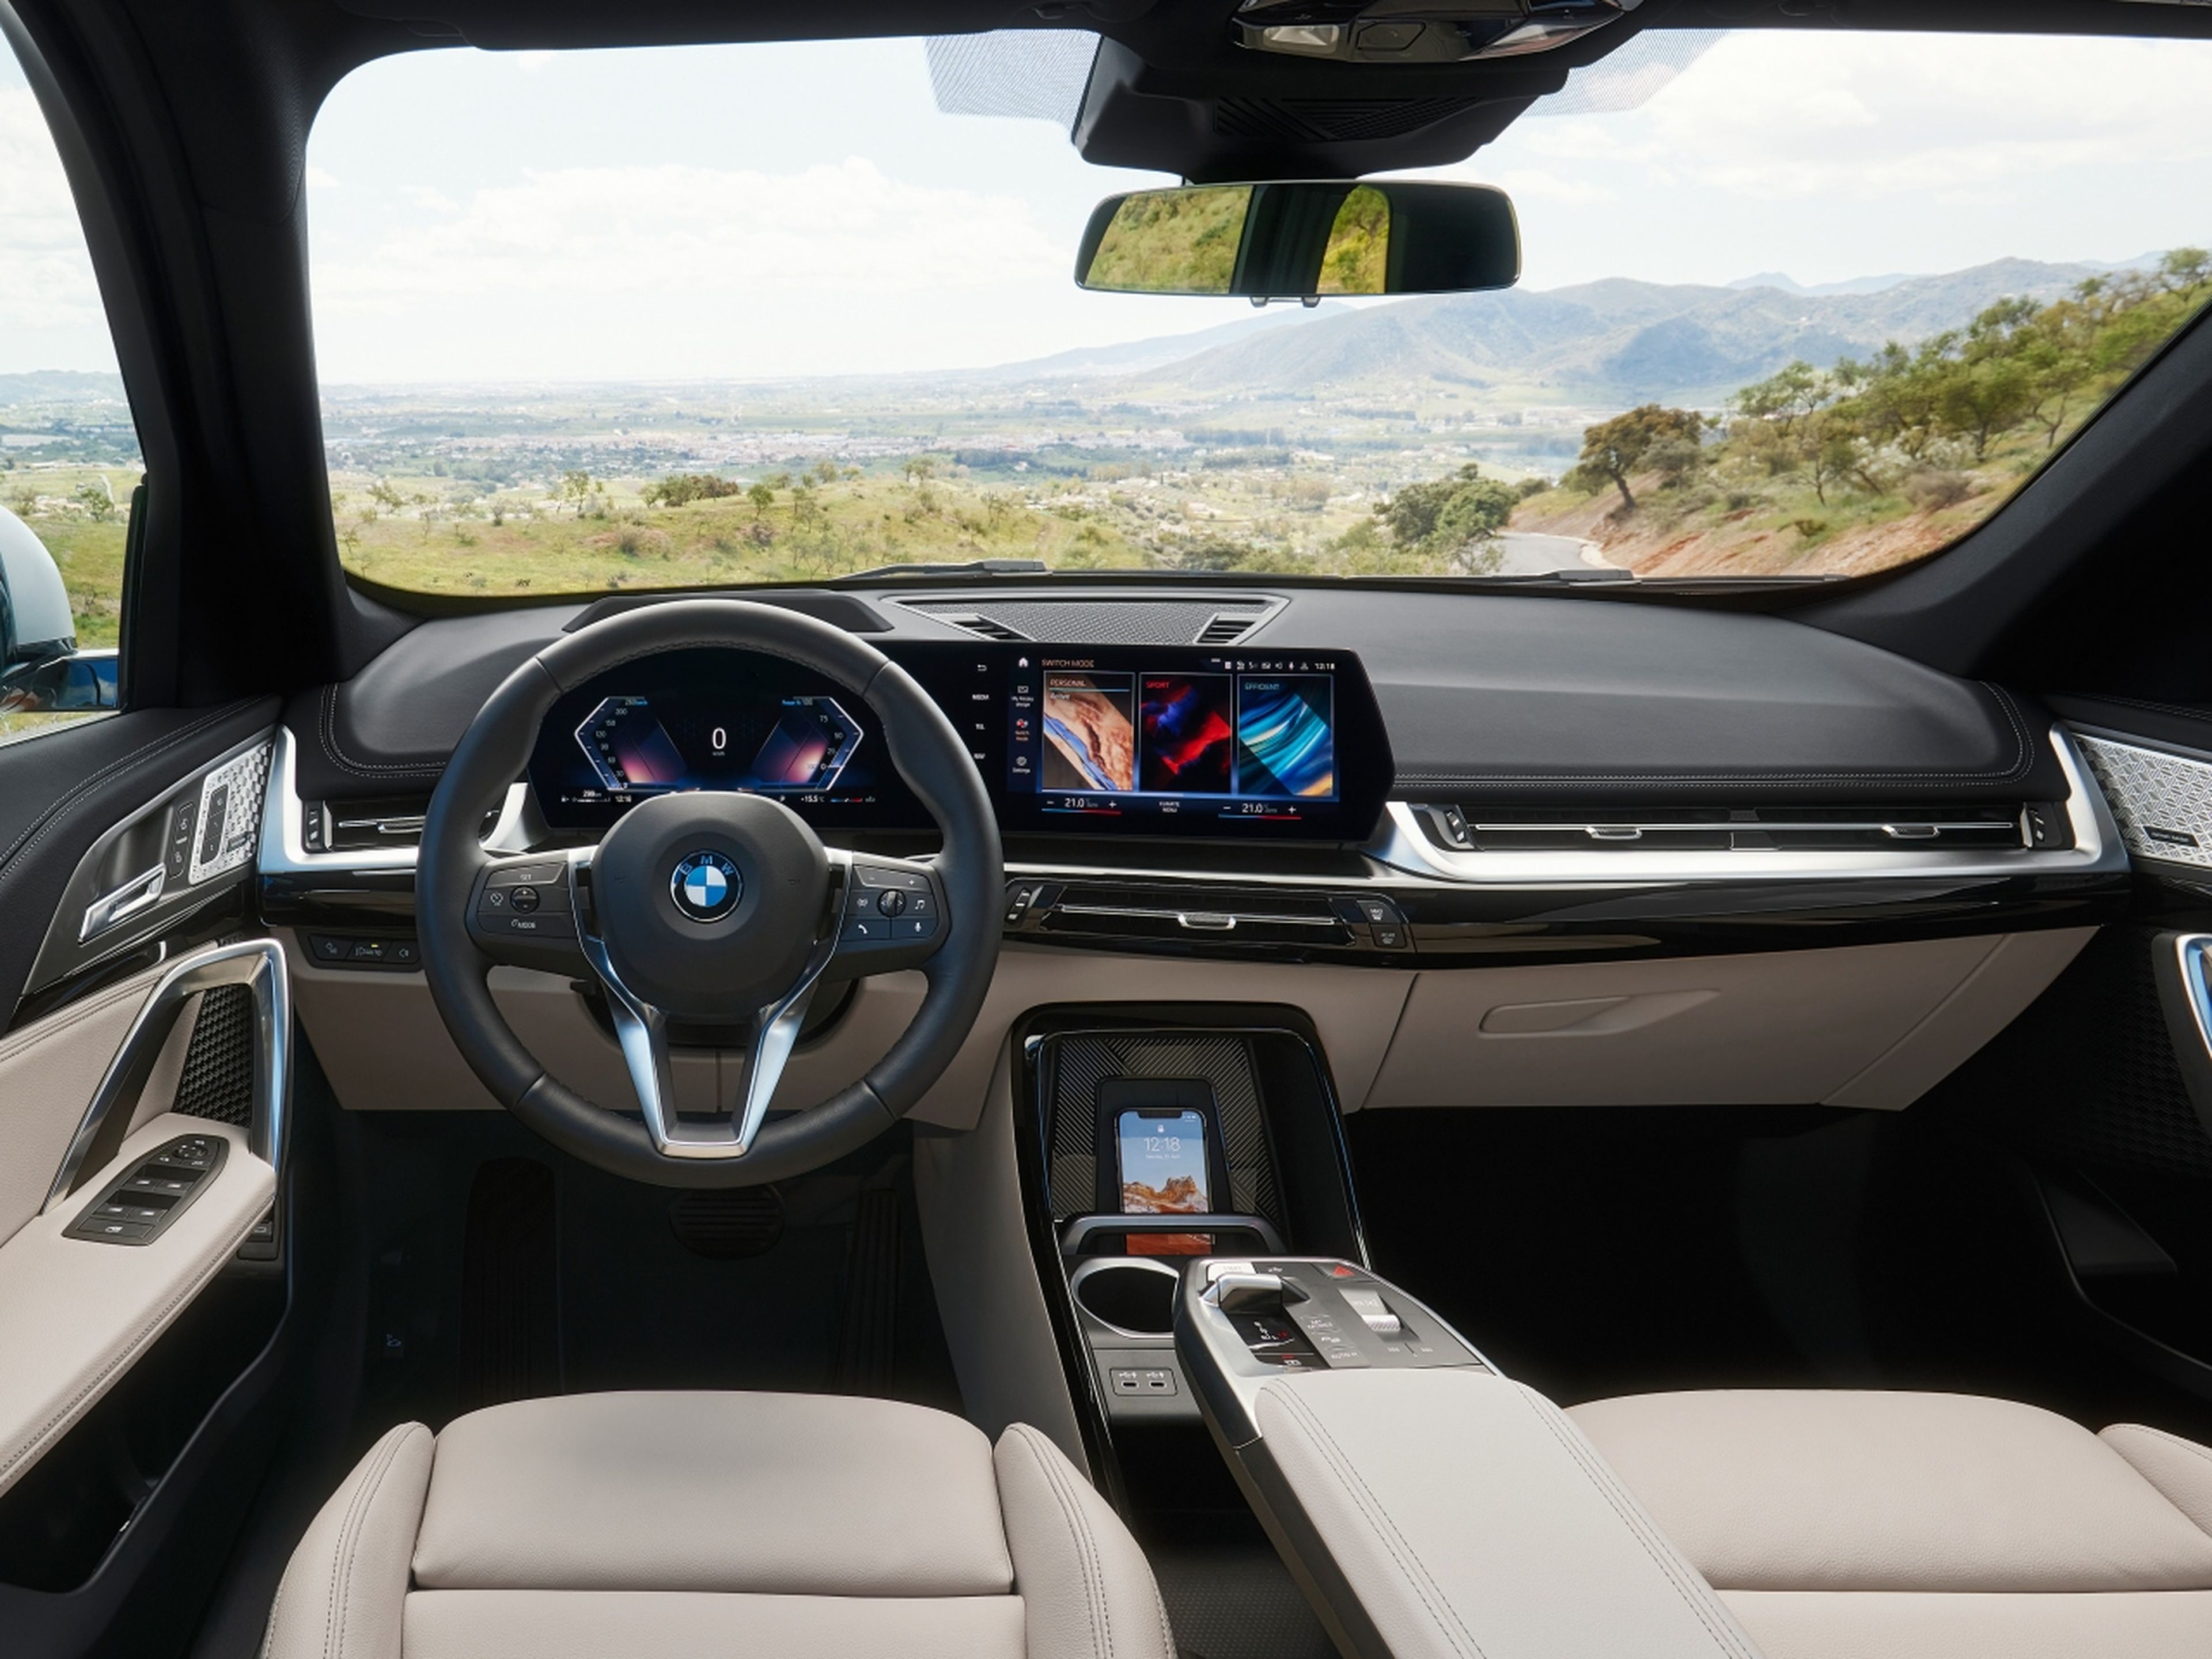 BMW X1, todas las versiones y motorizaciones del mercado, con precios,  imágenes, datos técnicos y pruebas.